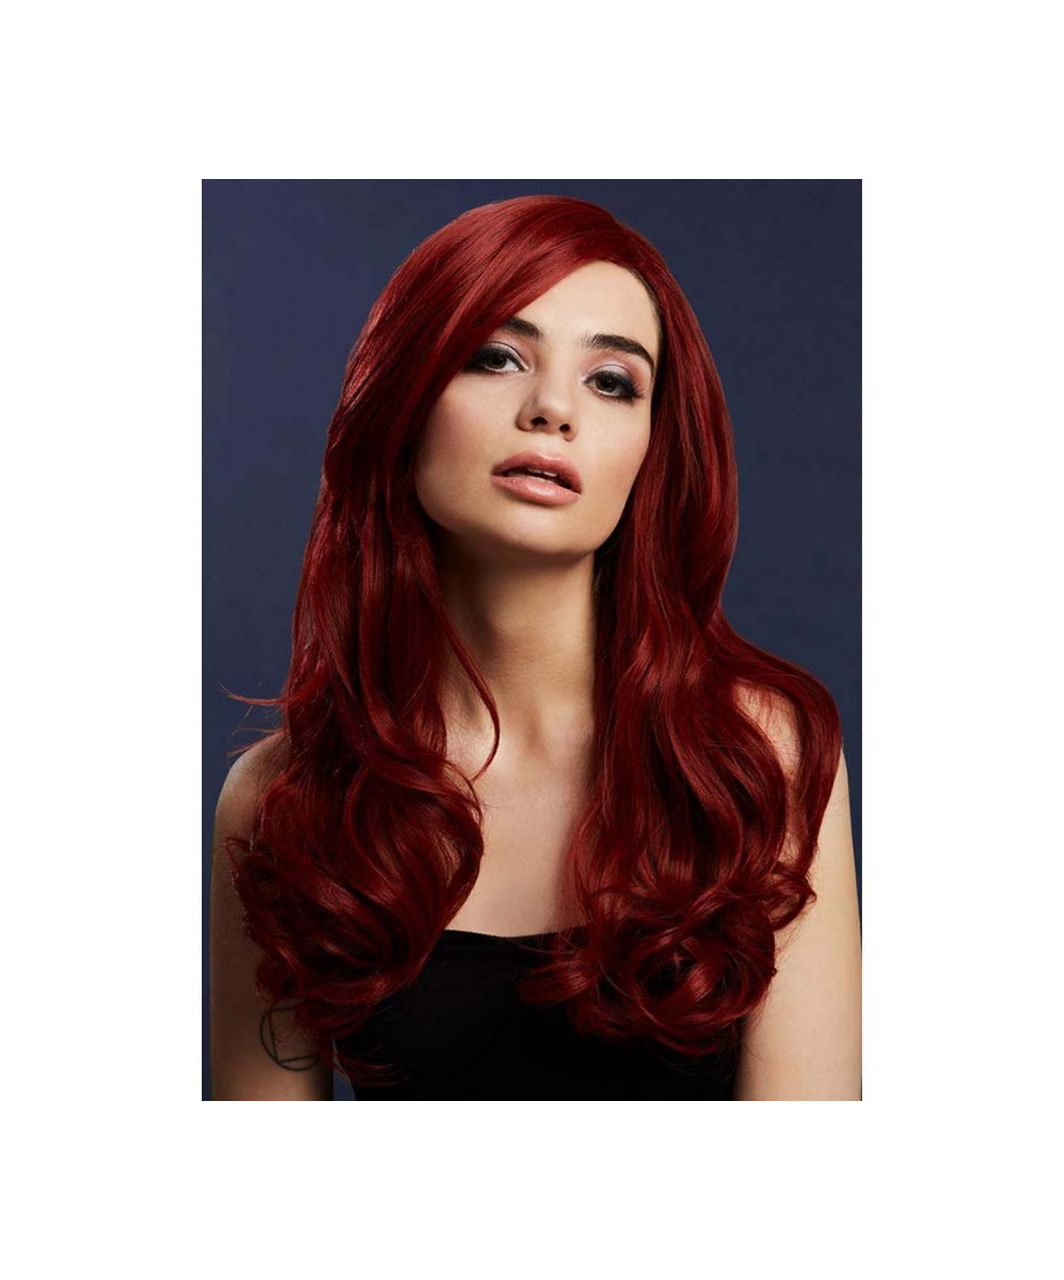 Fever Khloe ryškiai raudonas ilgas banguotų plaukų perukas